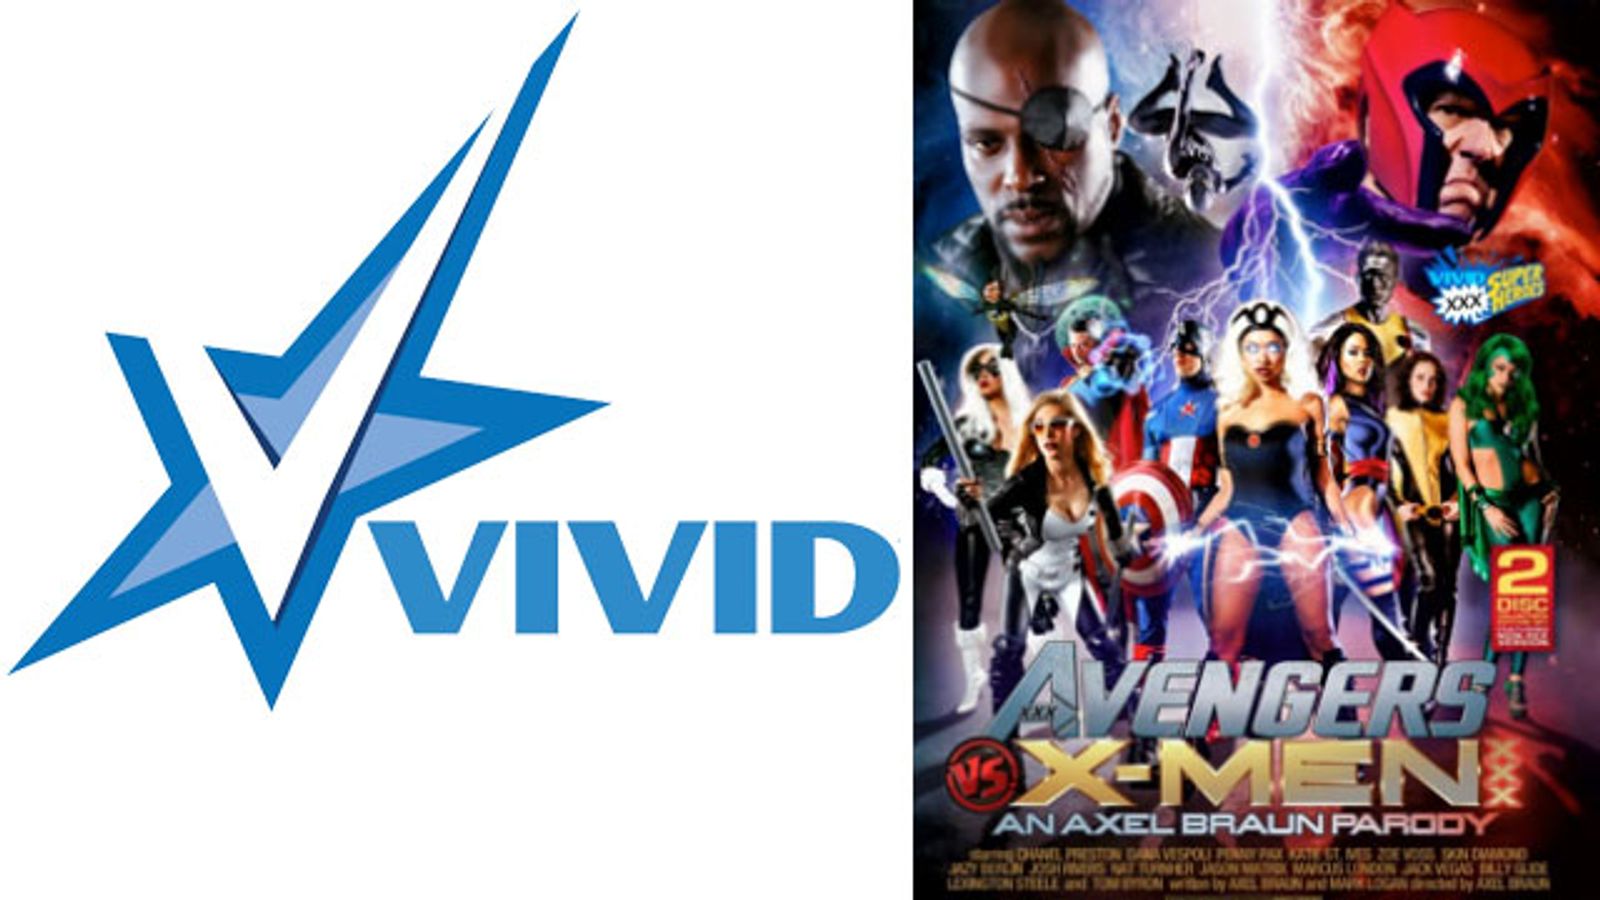 Vivid to Debut Axel Braun's 'Avengers vs X-Men XXX' Tomorrow